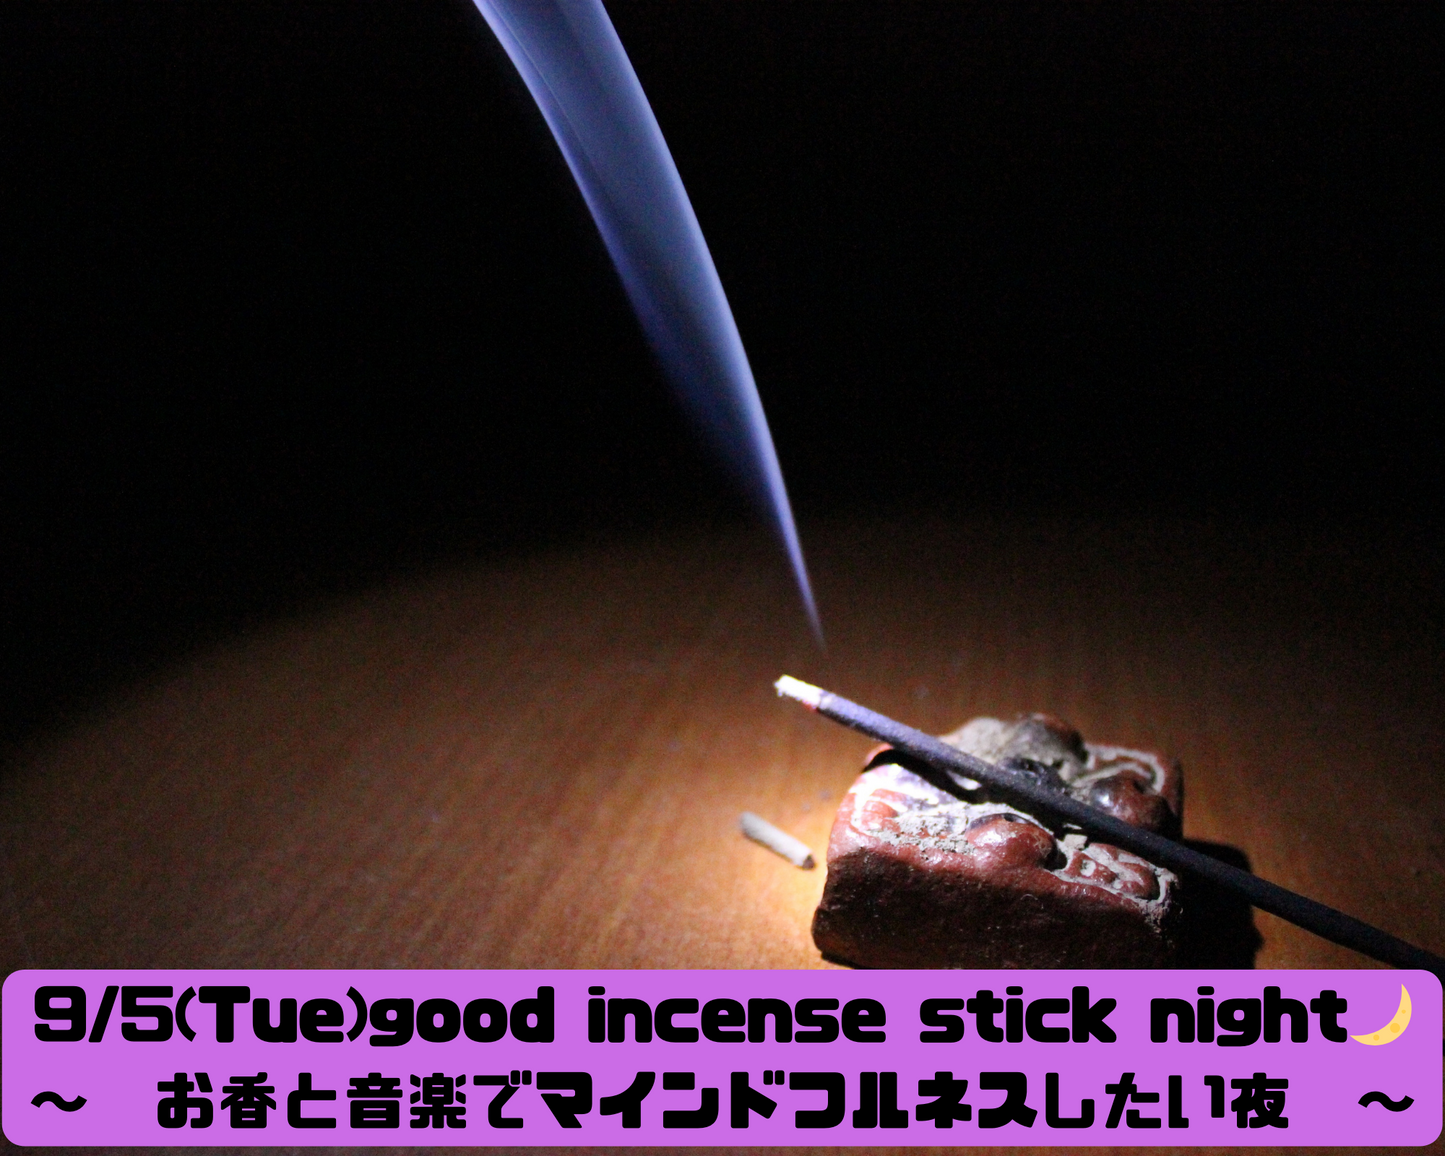 9/5(Tue)   good incense stick night🌙〜お香と音楽でマインドフルネスしたい夜〜